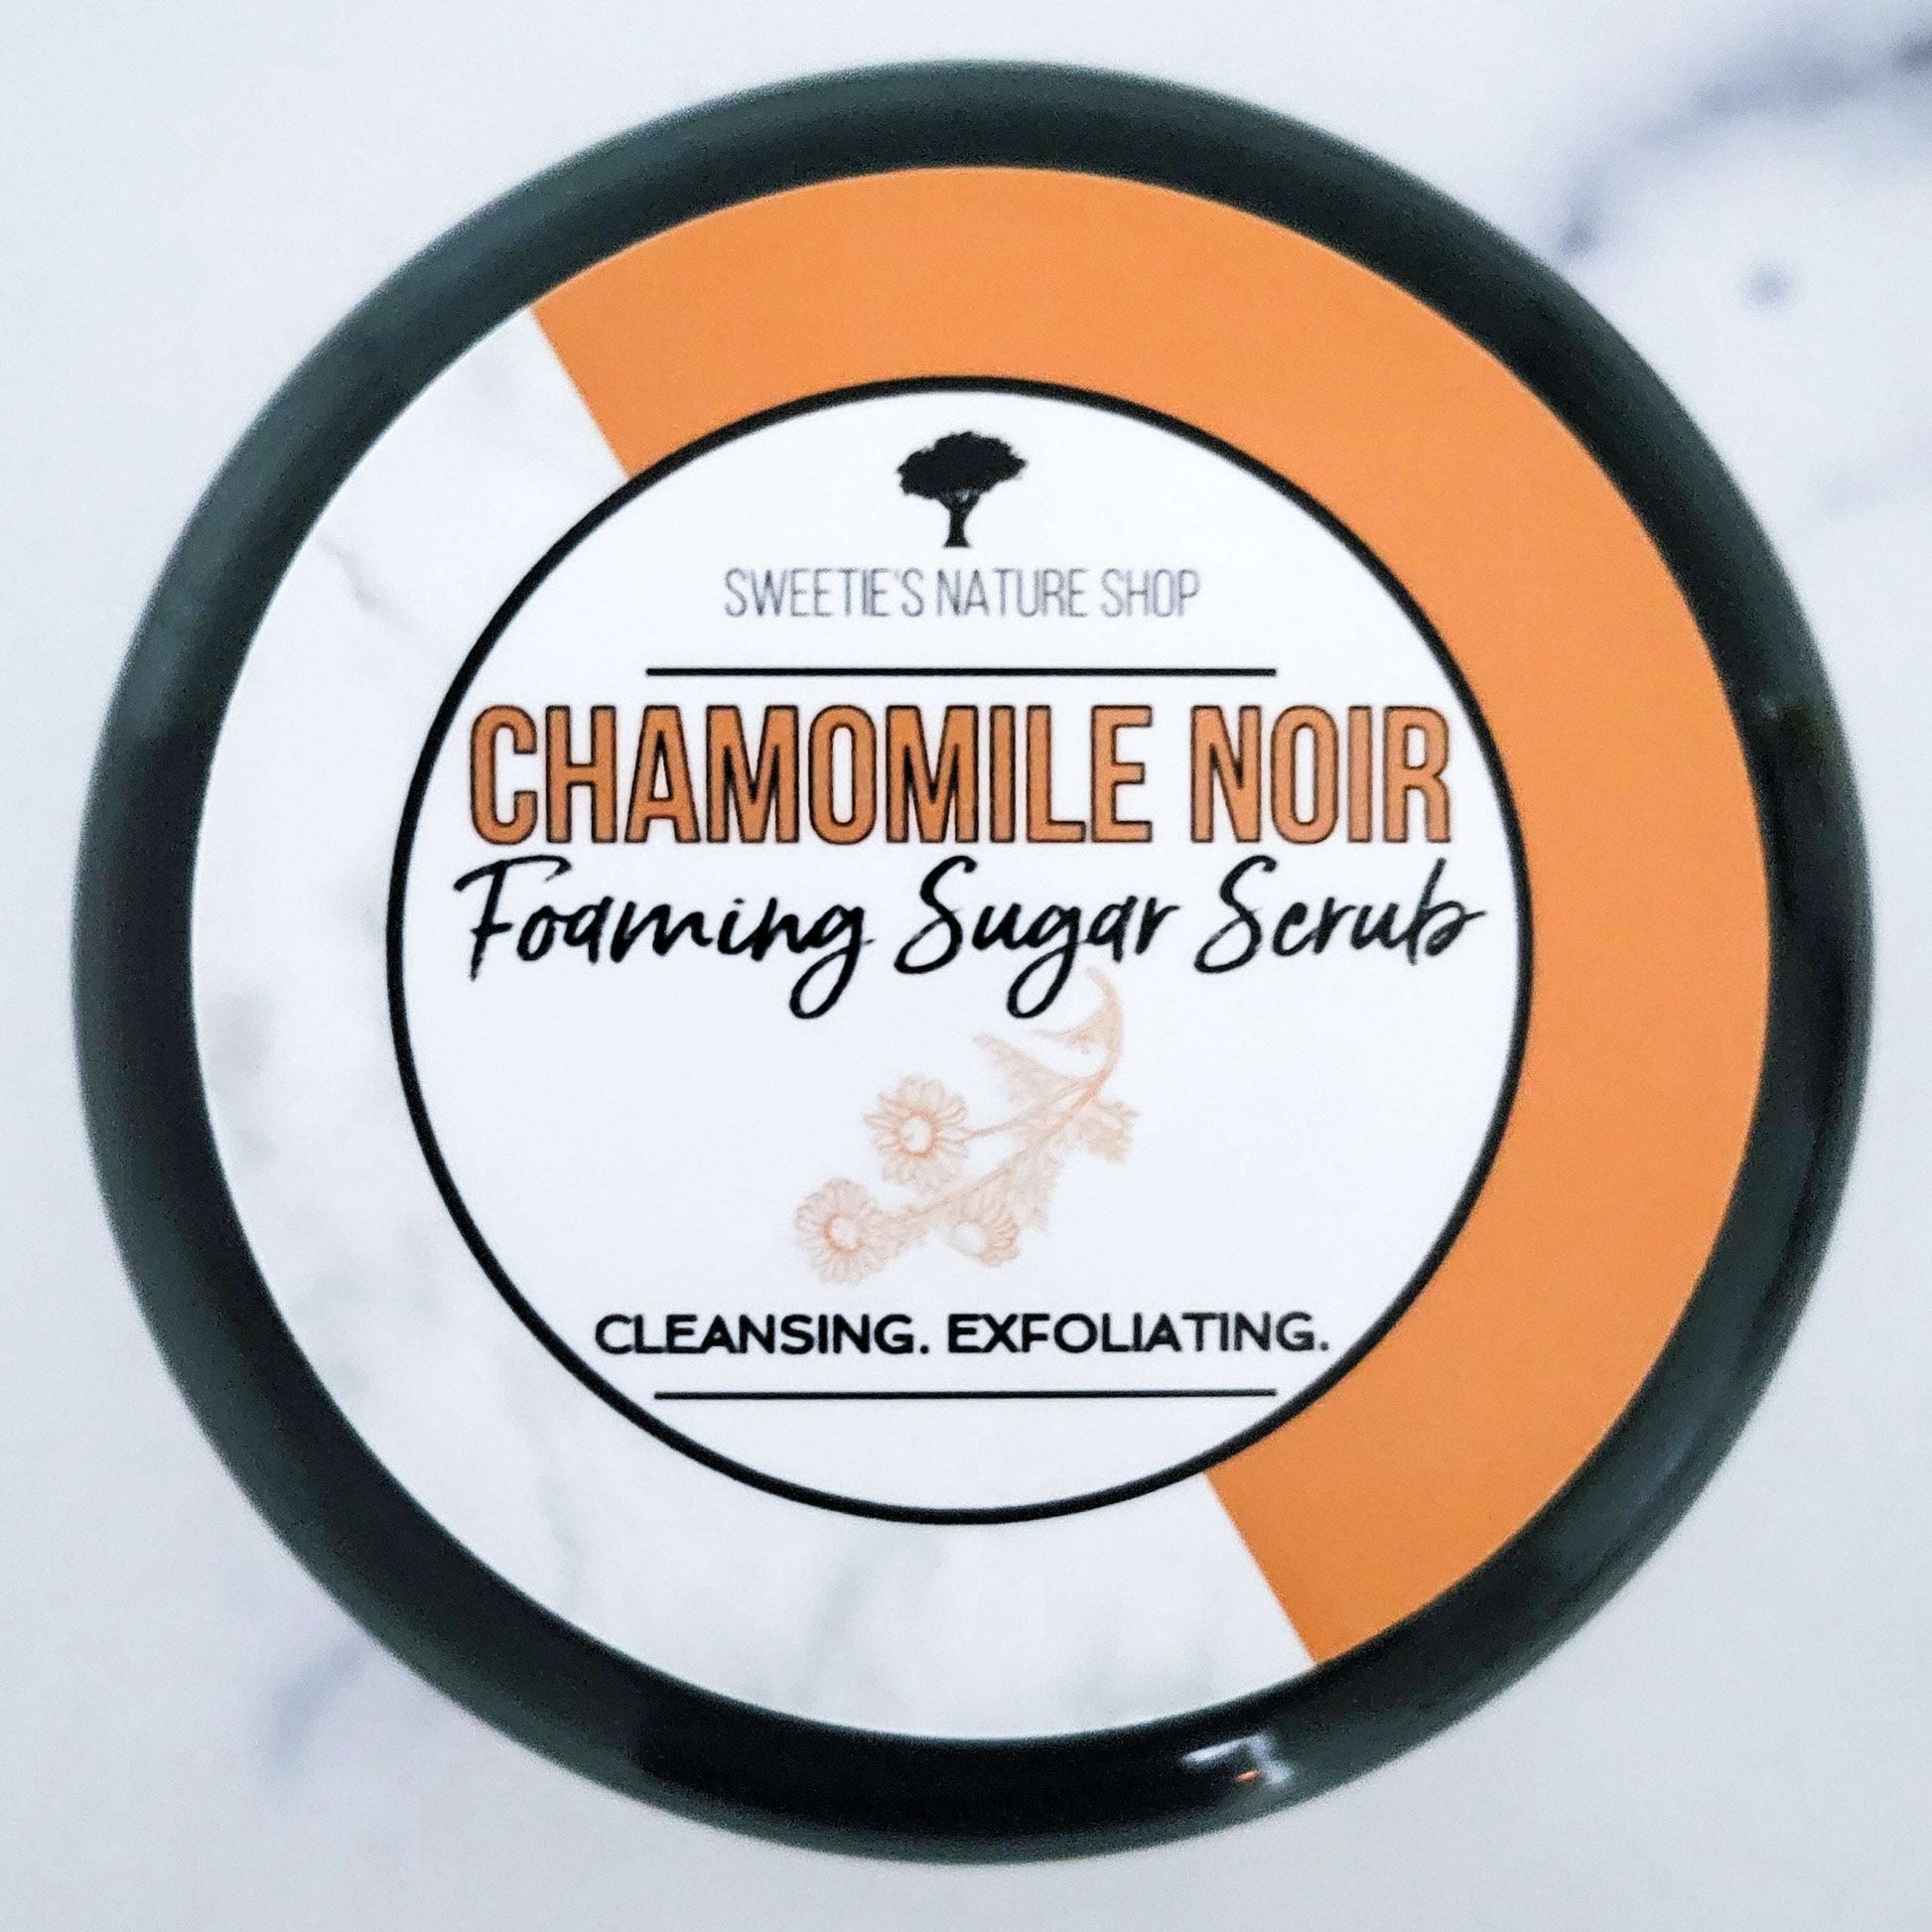 Chamomile Noir Foaming Sugar Scrub